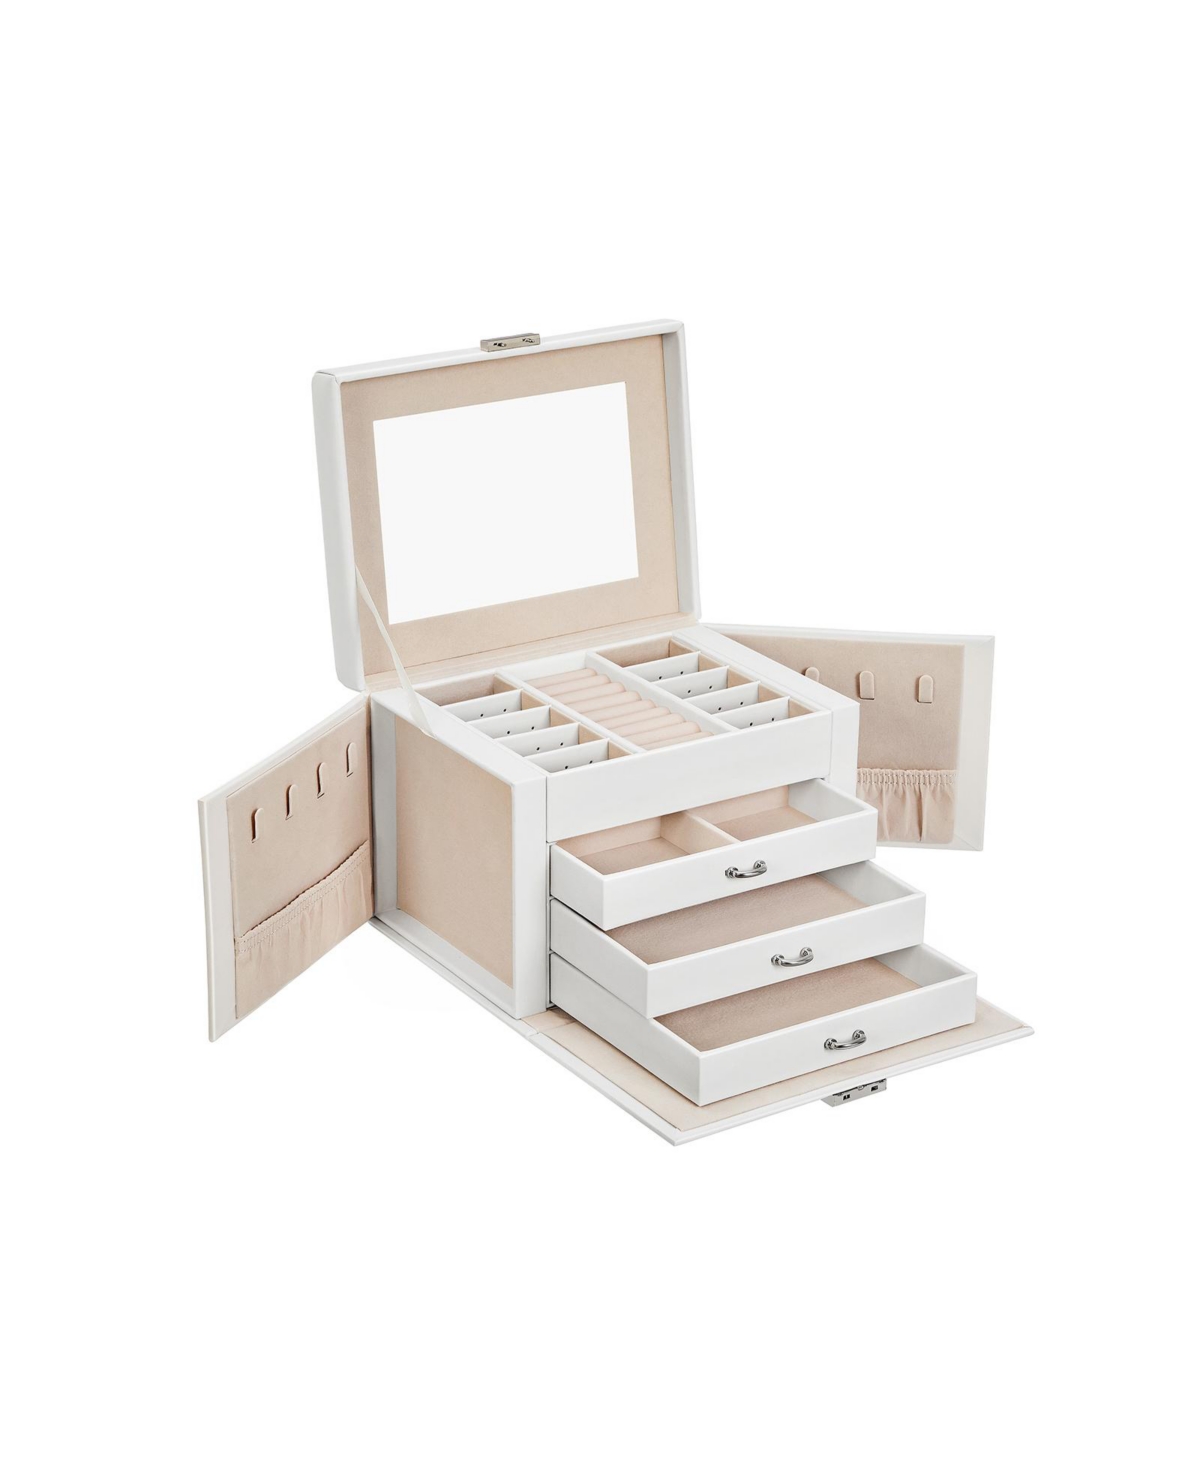 Jewelry Box, Jewelry Organizer 4 Levels, Lockable Jewelry Storage Case with Trays, Velvet Lining - White